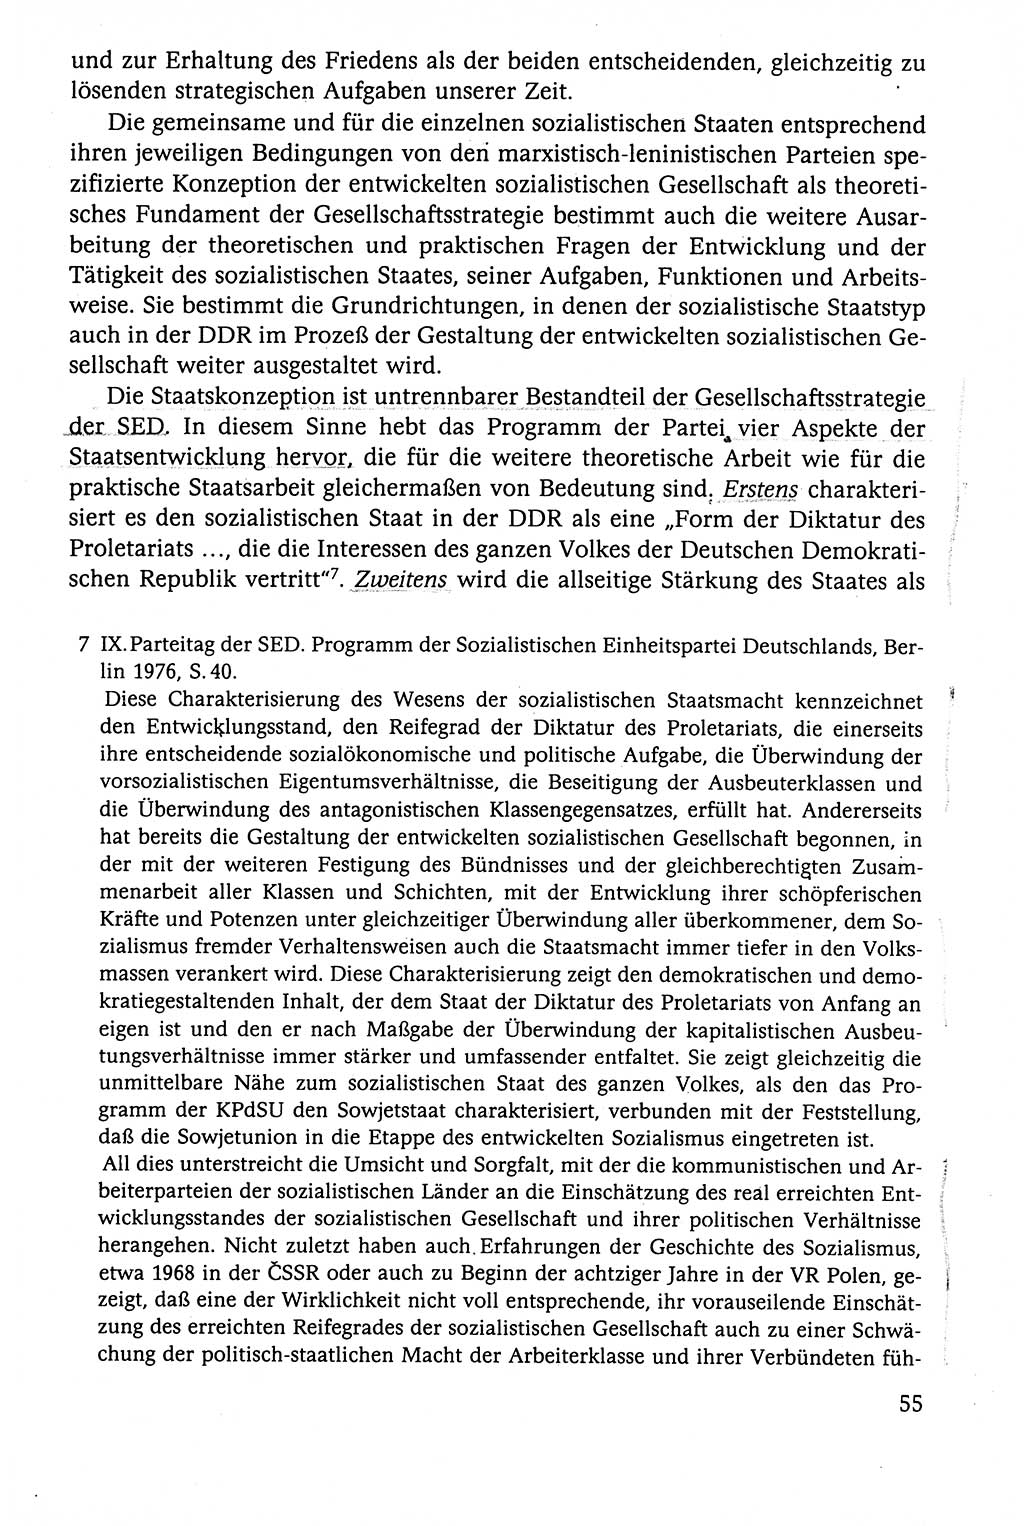 Der Staat im politischen System der DDR (Deutsche Demokratische Republik) 1986, Seite 55 (St. pol. Sys. DDR 1986, S. 55)